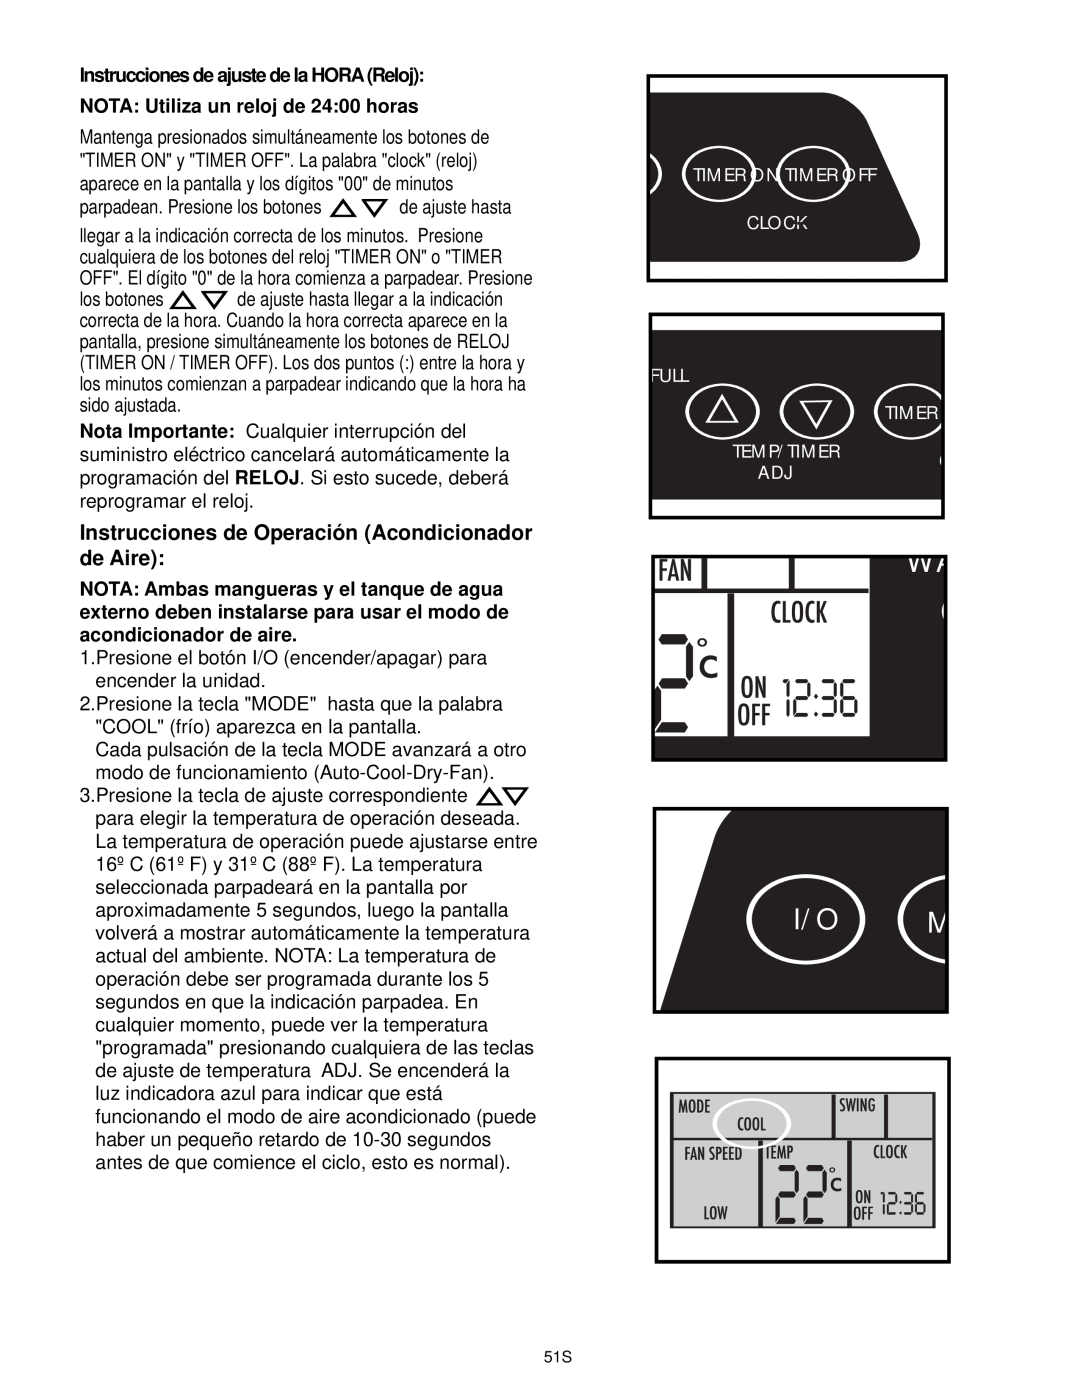 Danby DPAC10030 manual Instrucciones de Operación Acondicionador, de Aire, Instrucciones de ajuste de la HORA Reloj 